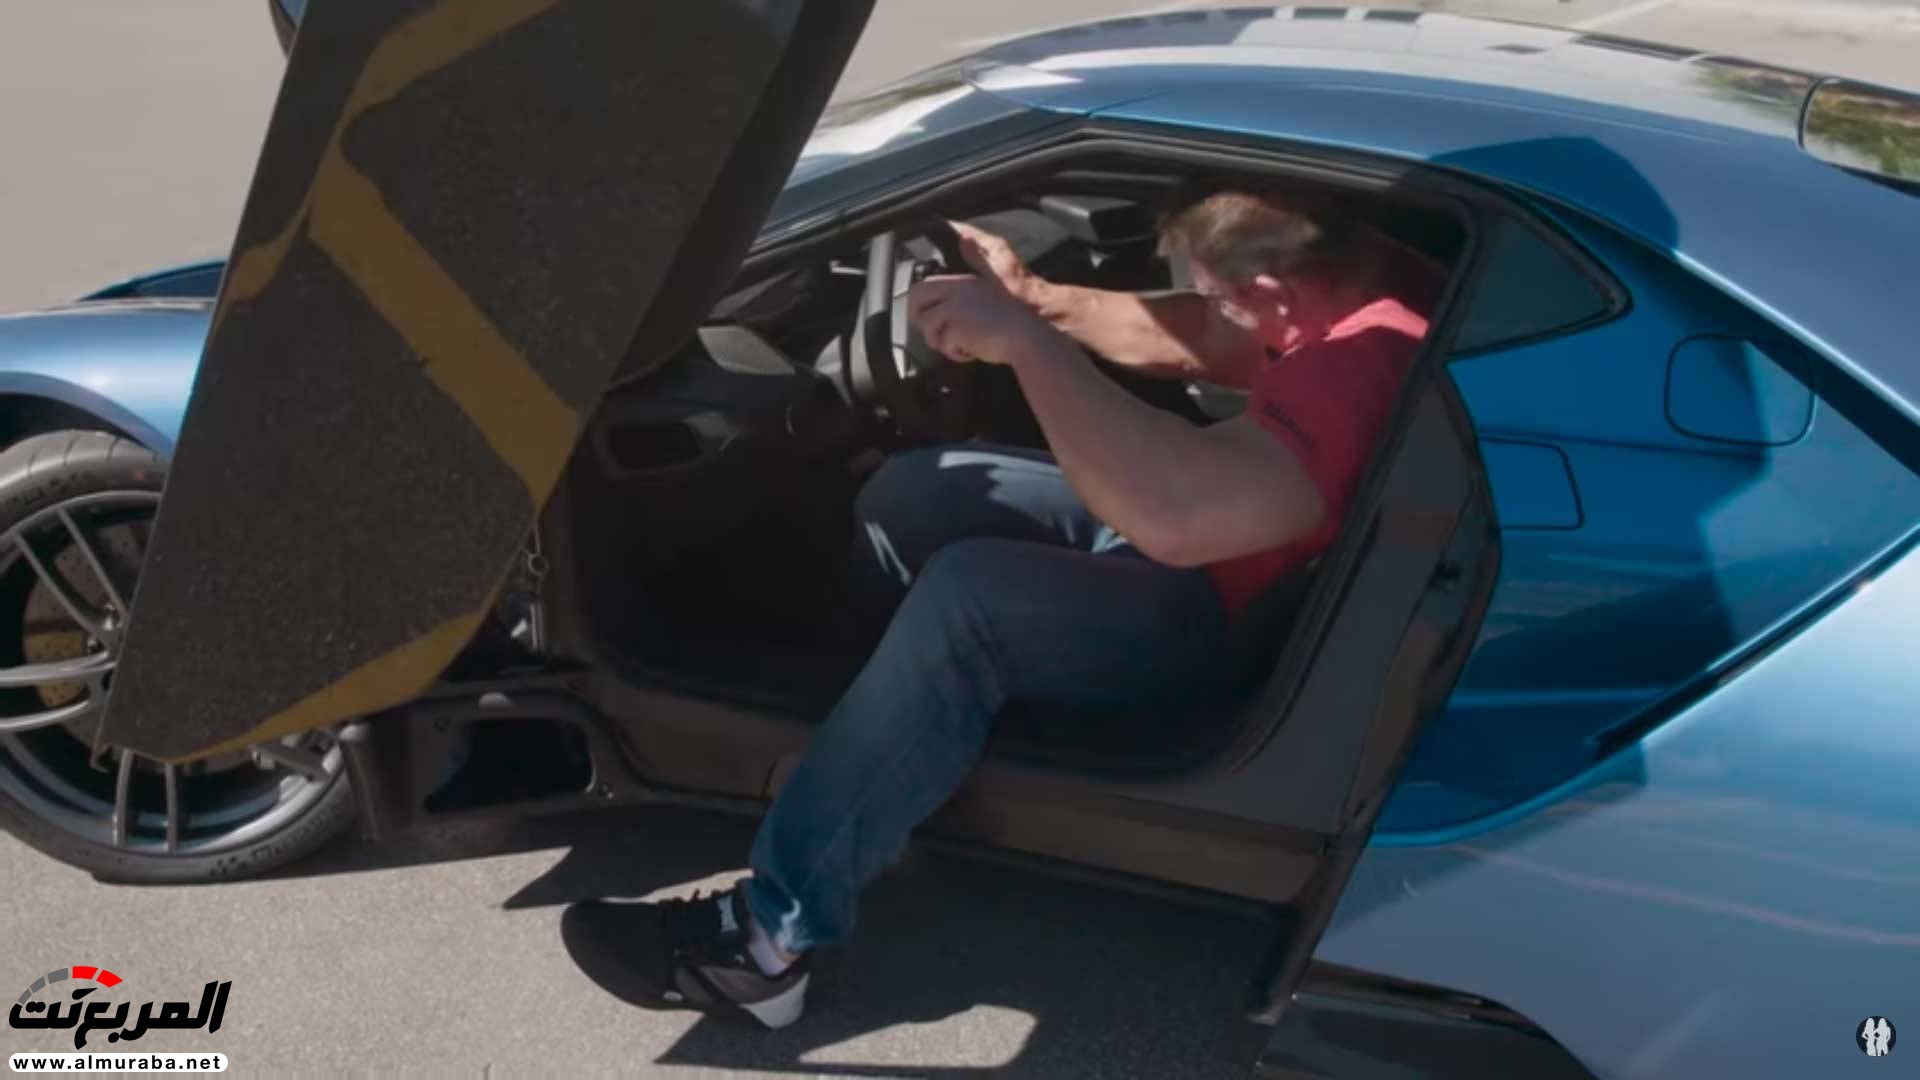 جون سينا يستعرض فورد GT 2017 "فيديو وصور" 7